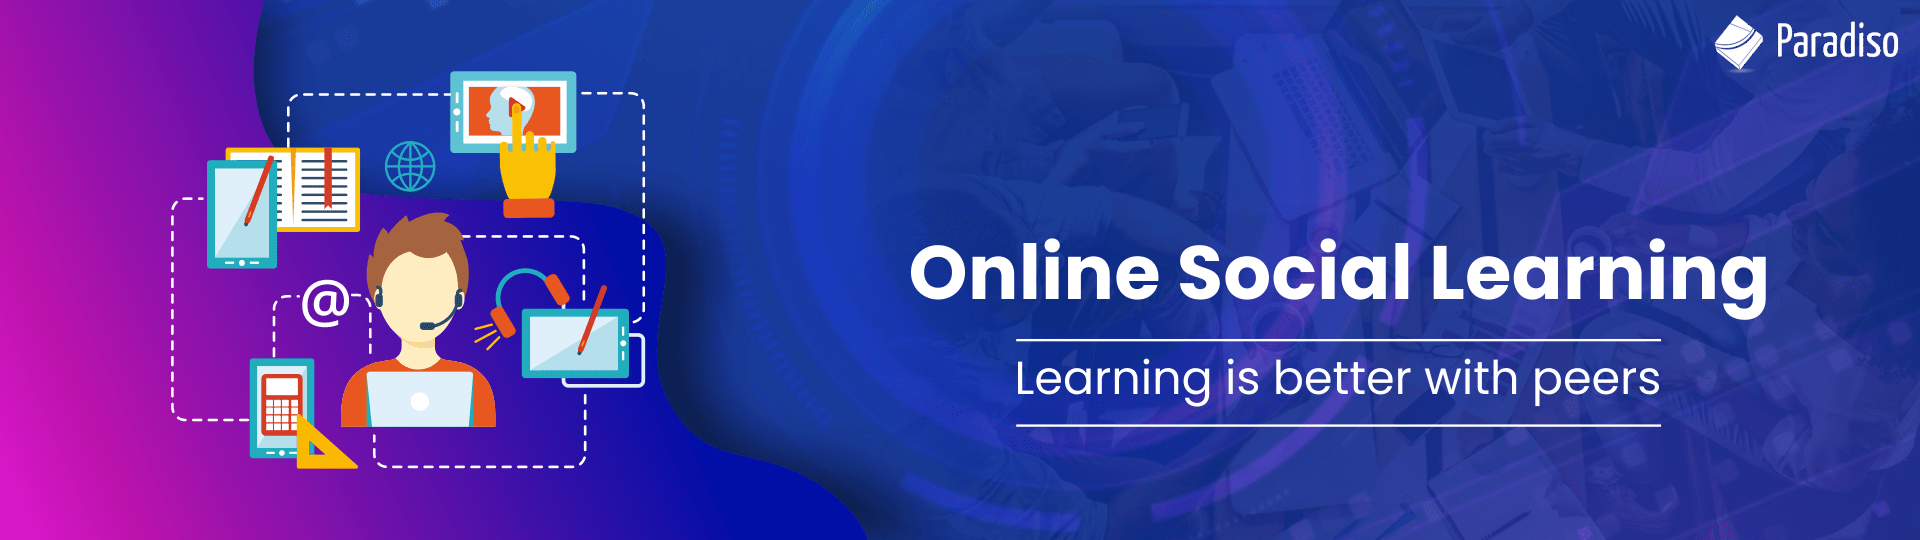 online social learning